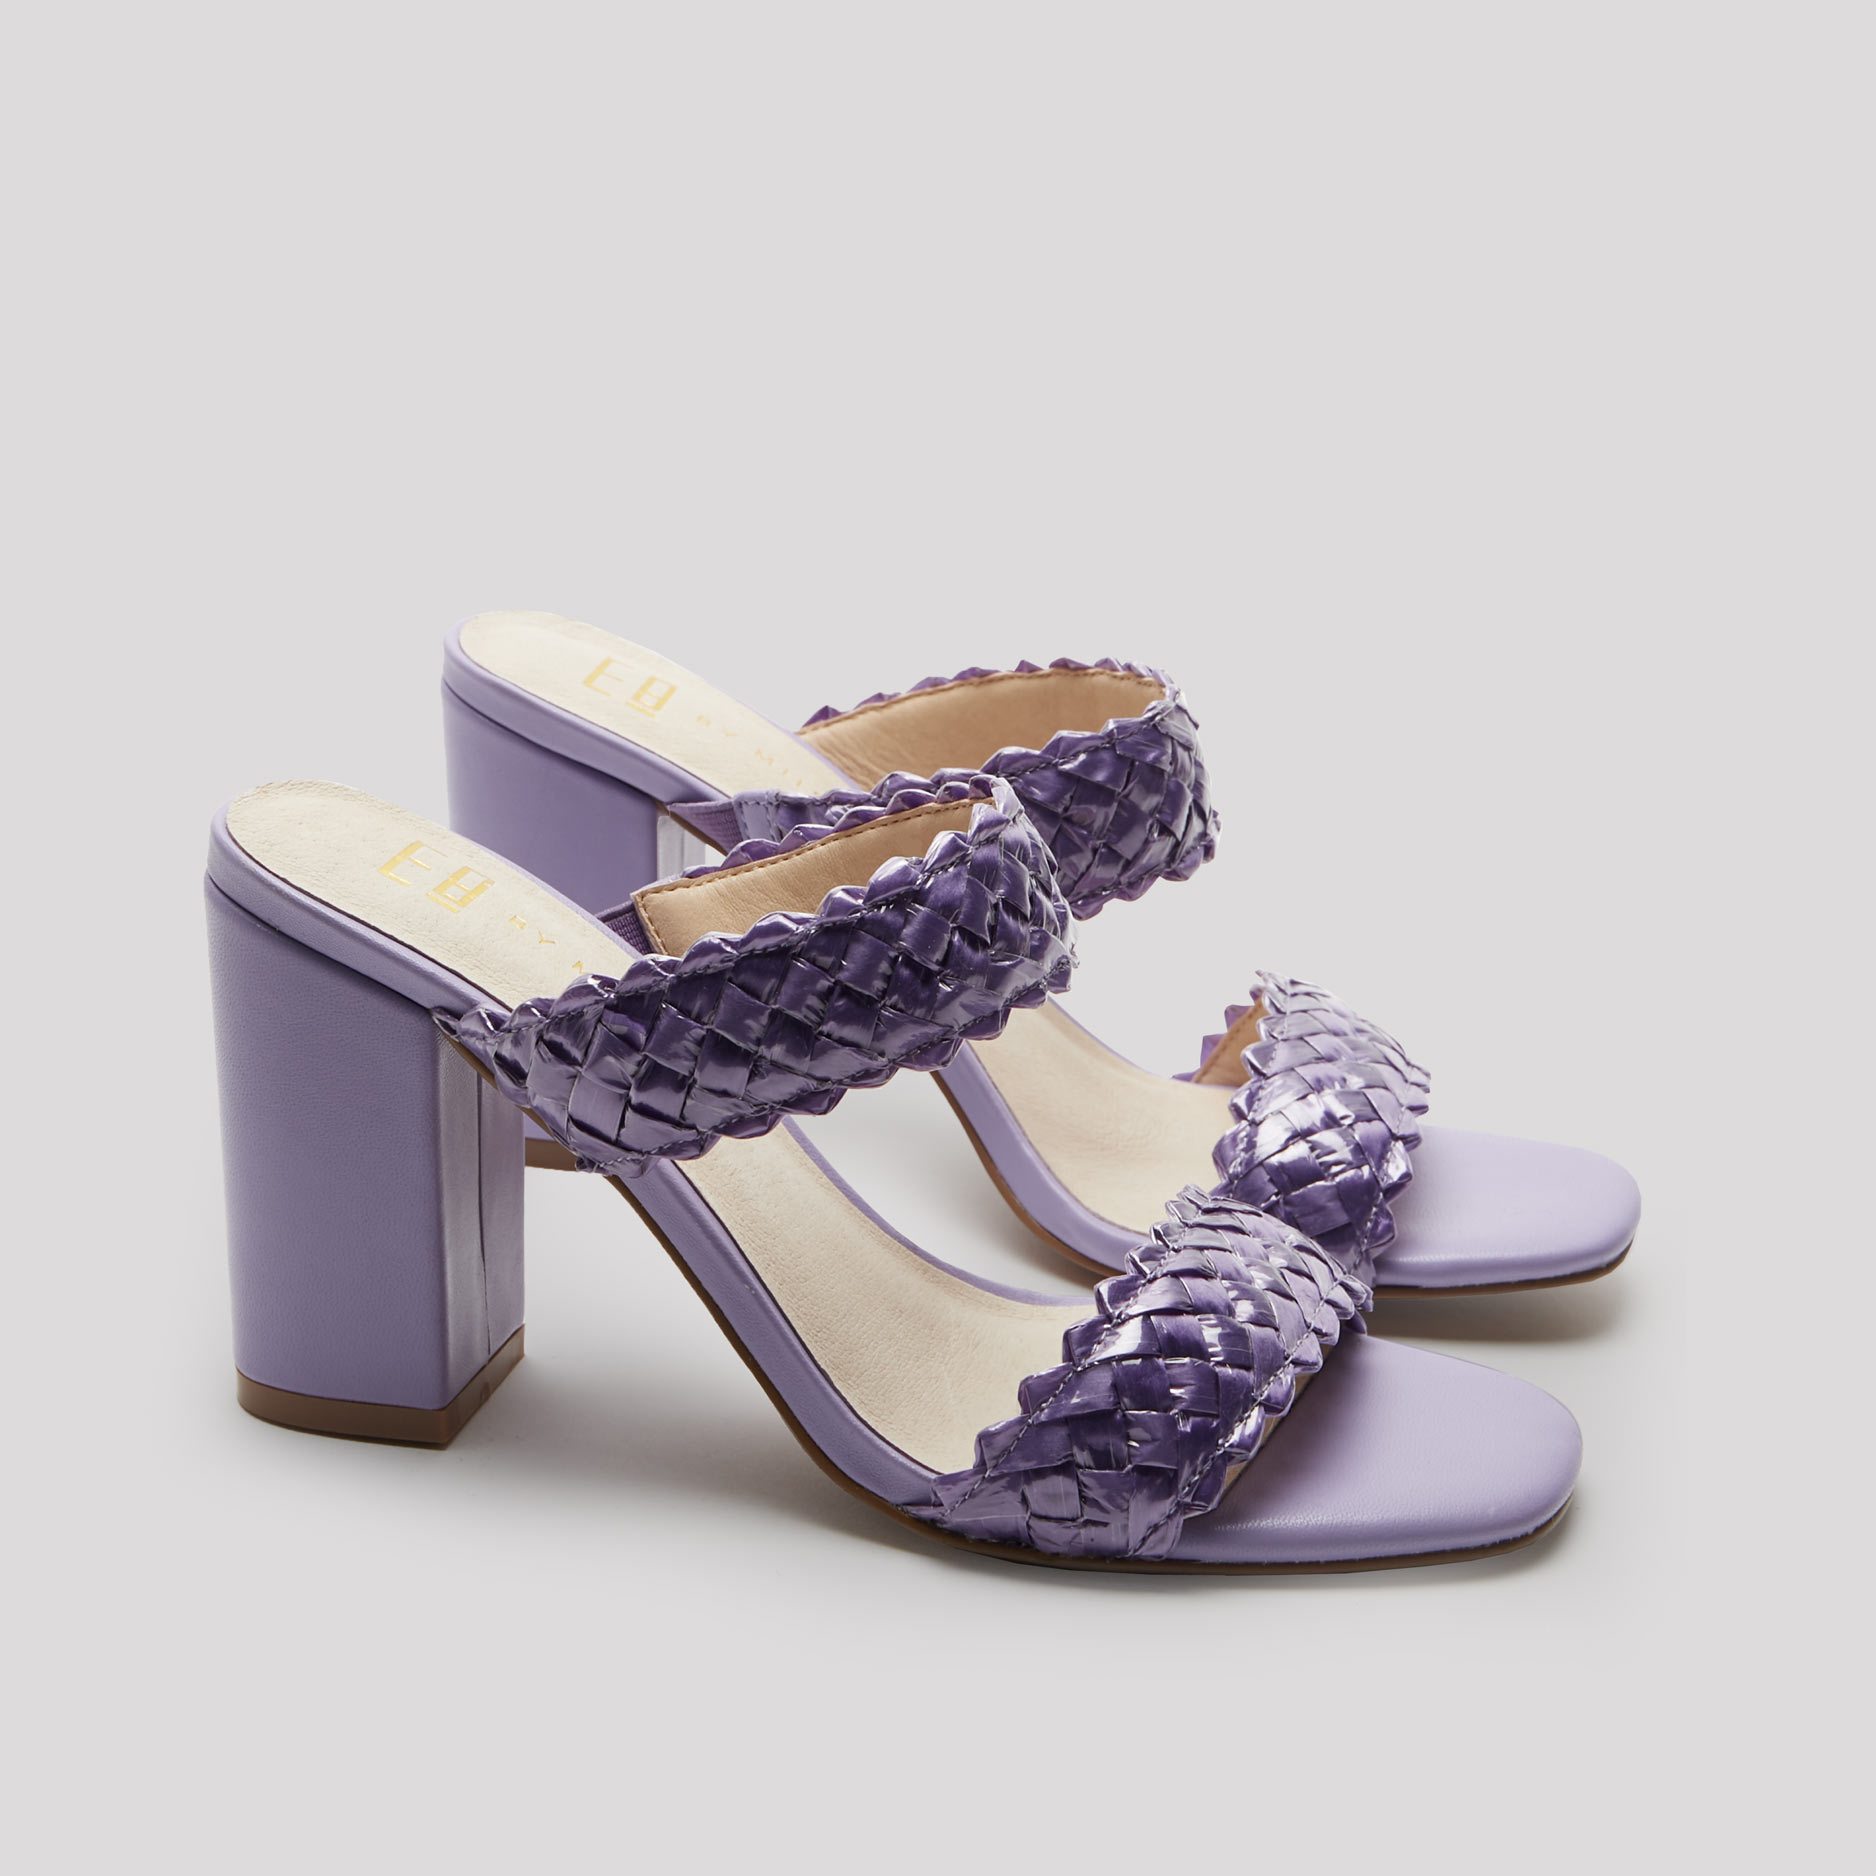 Lavender color platform shoes